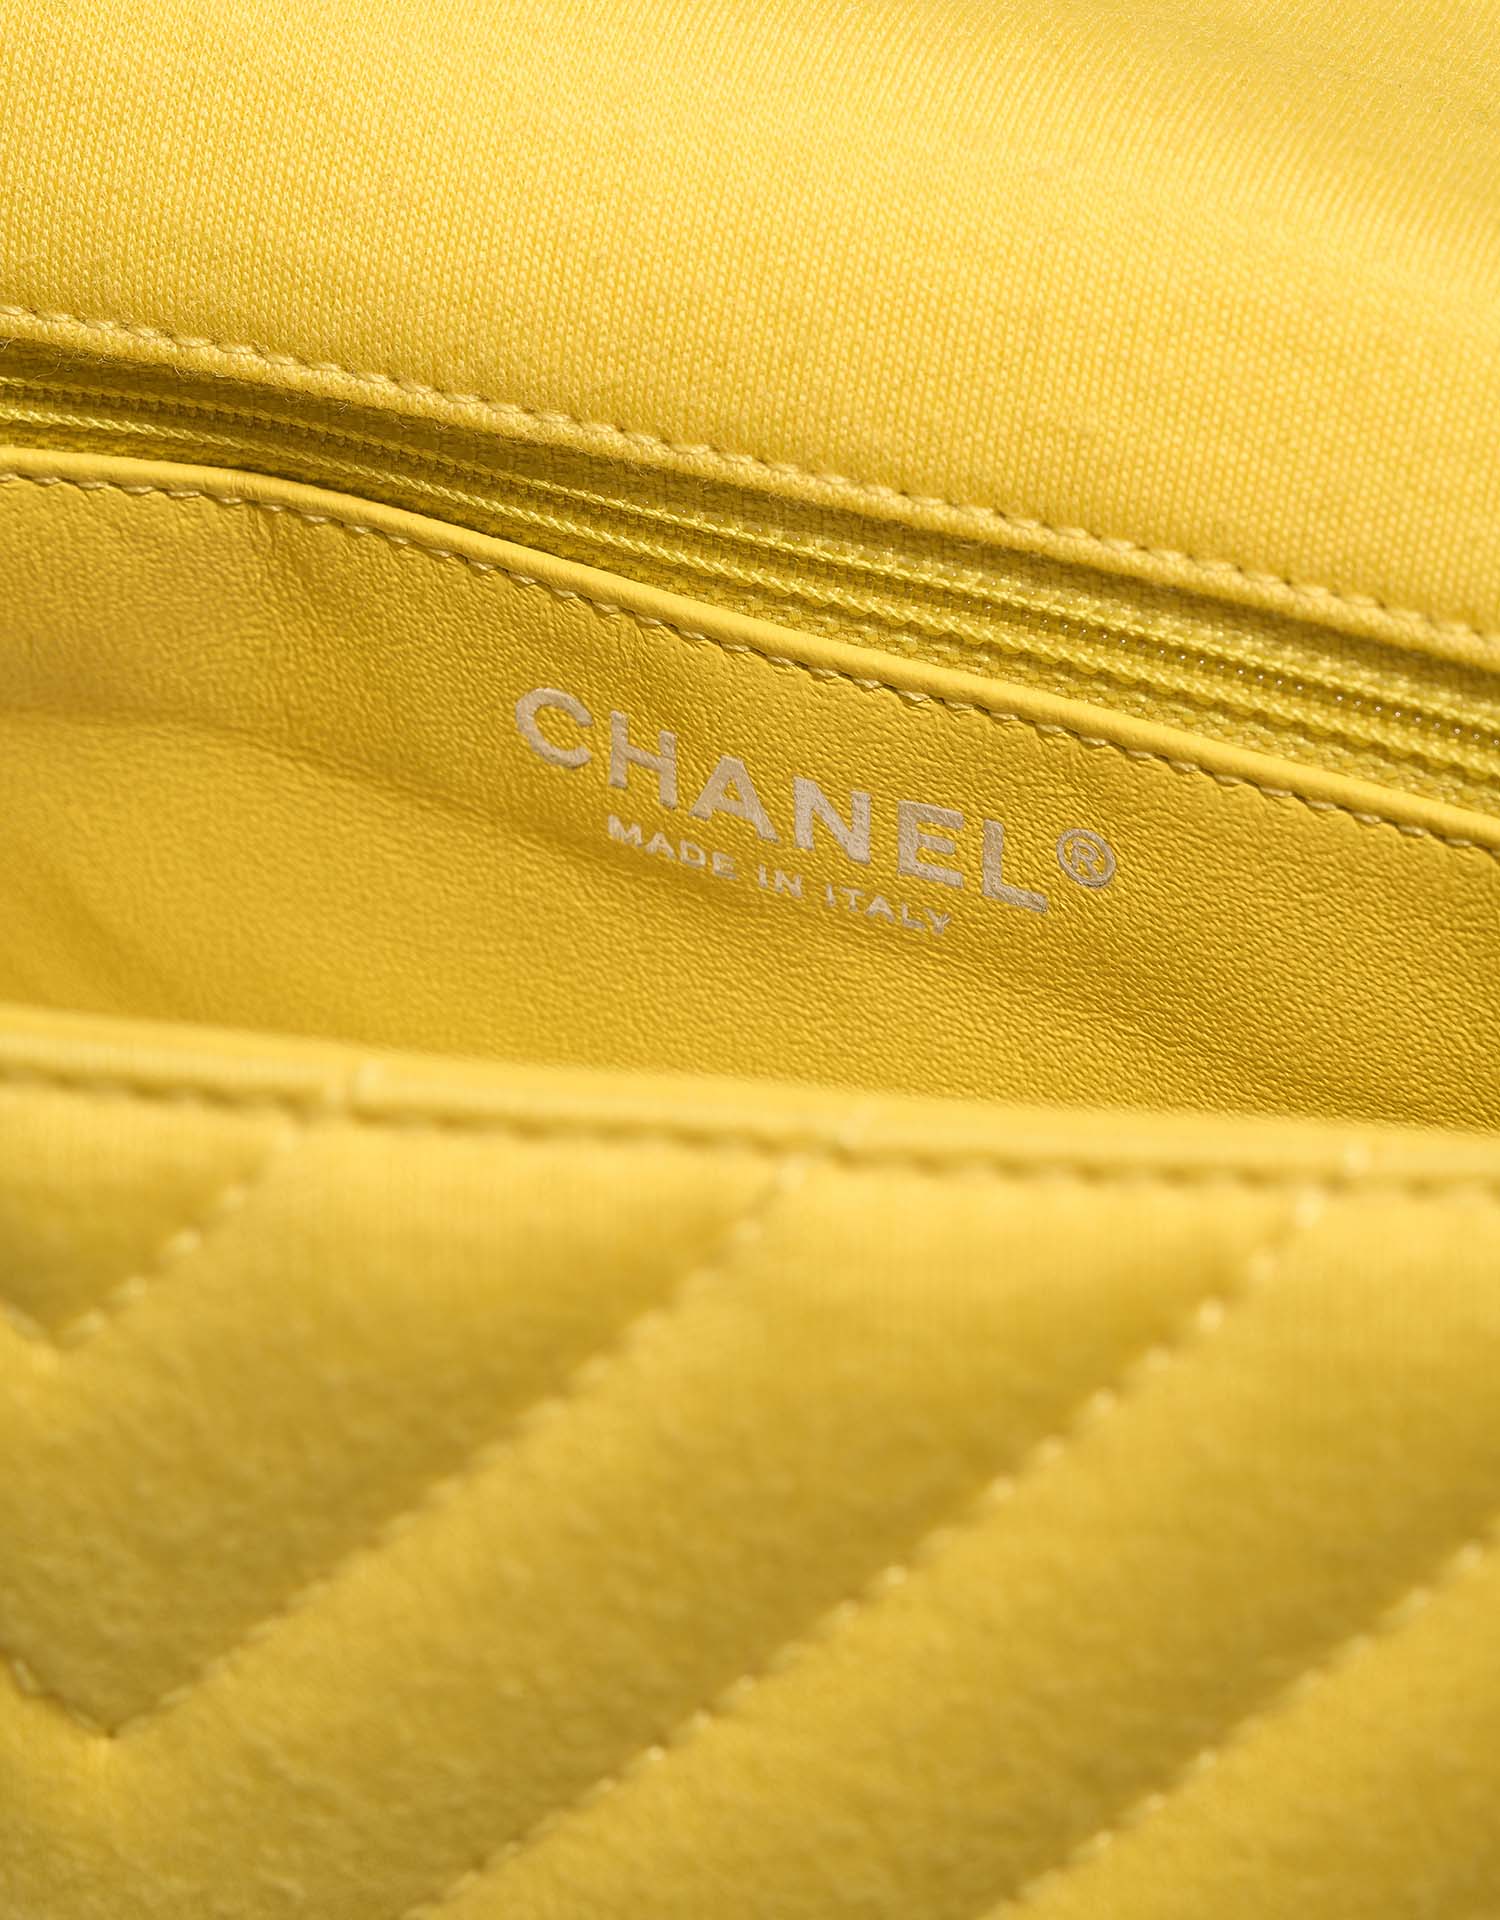 Chanel Timeless Medium Yellow Logo | Verkaufen Sie Ihre Designer-Tasche auf Saclab.com